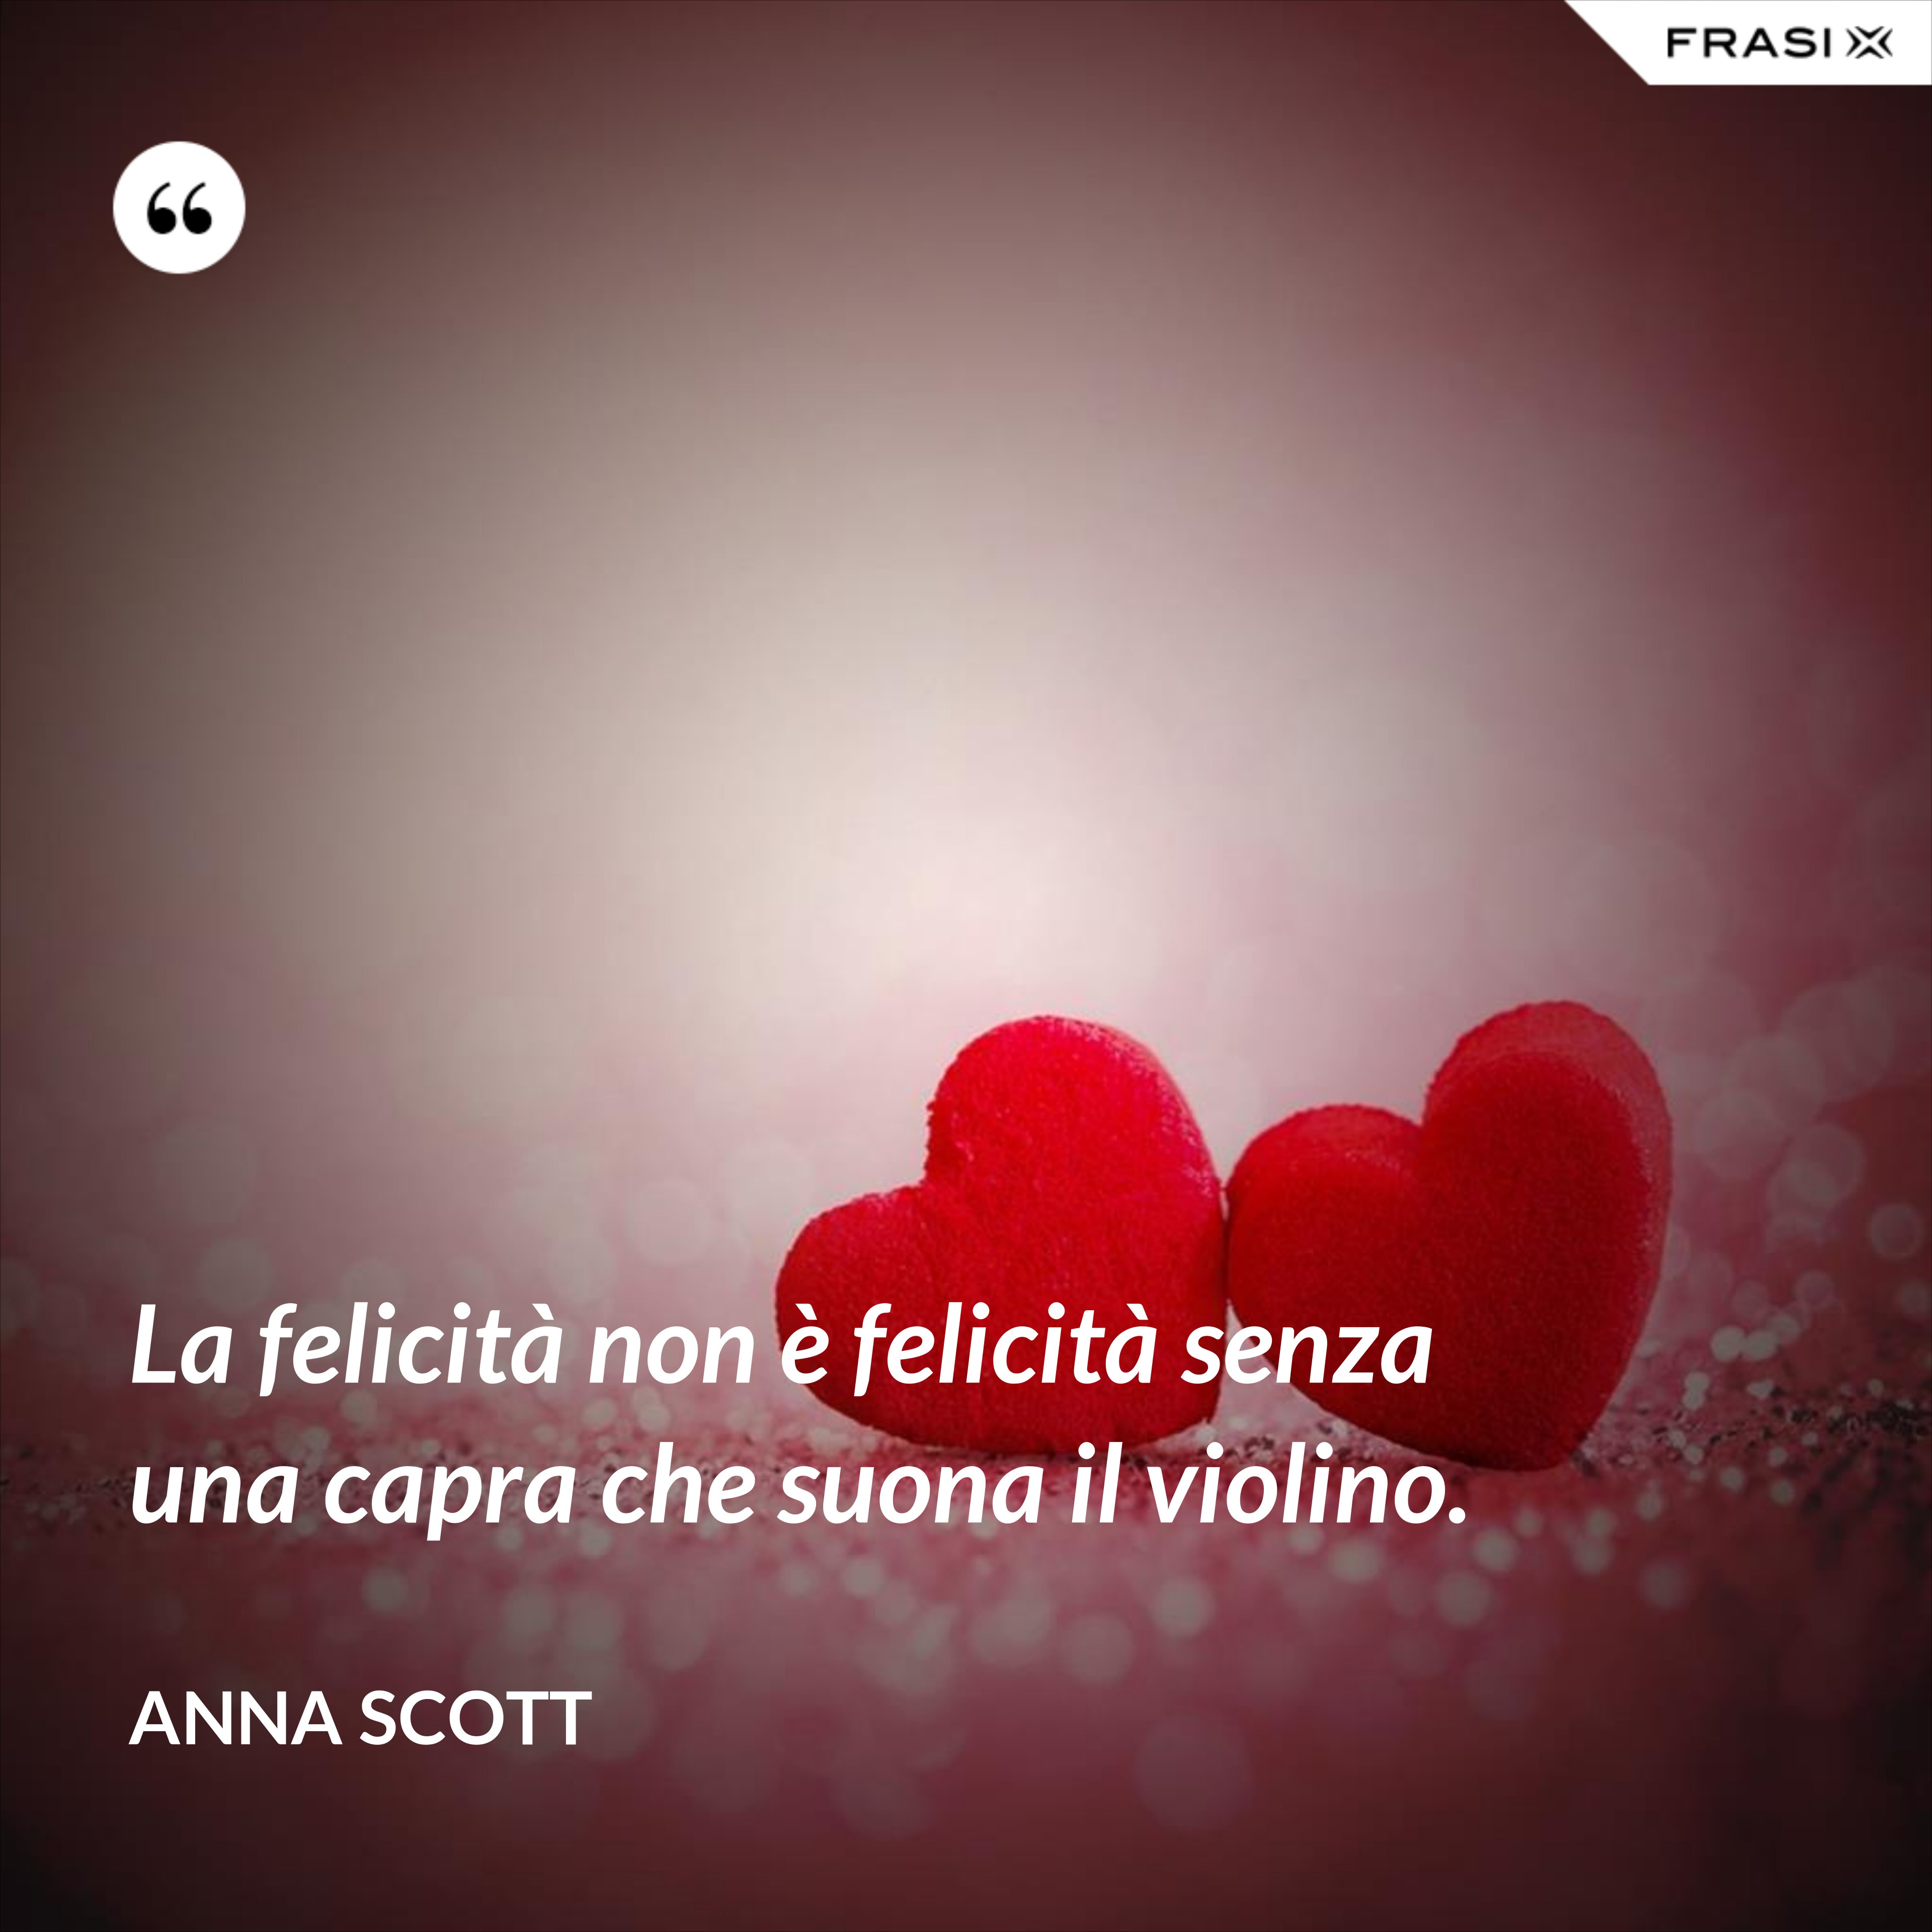 La felicità non è felicità senza una capra che suona il violino. - Anna Scott